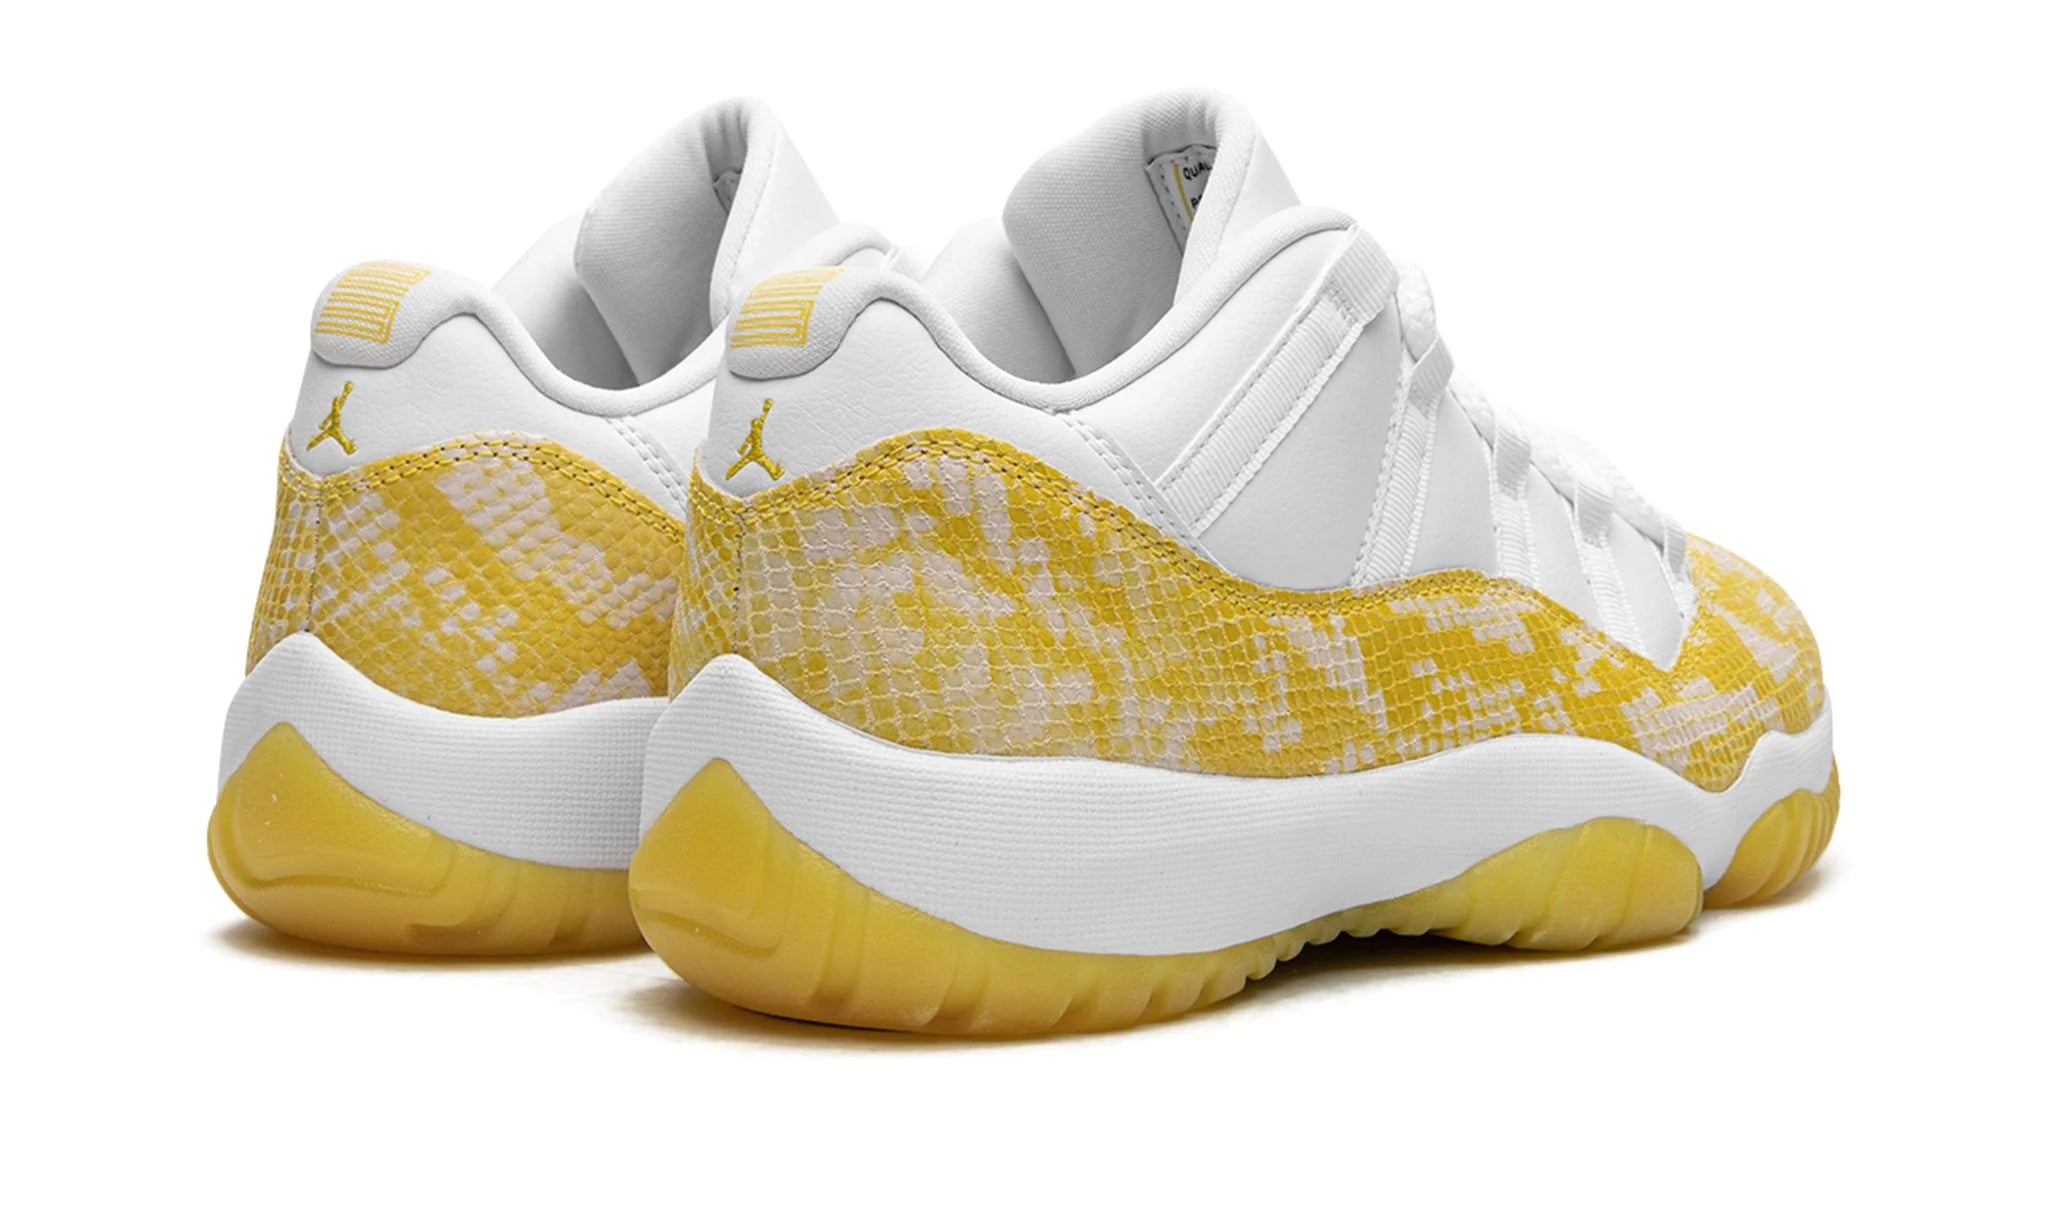 Nike Air Jordan 11 Retro Low Yellow Snakeskin